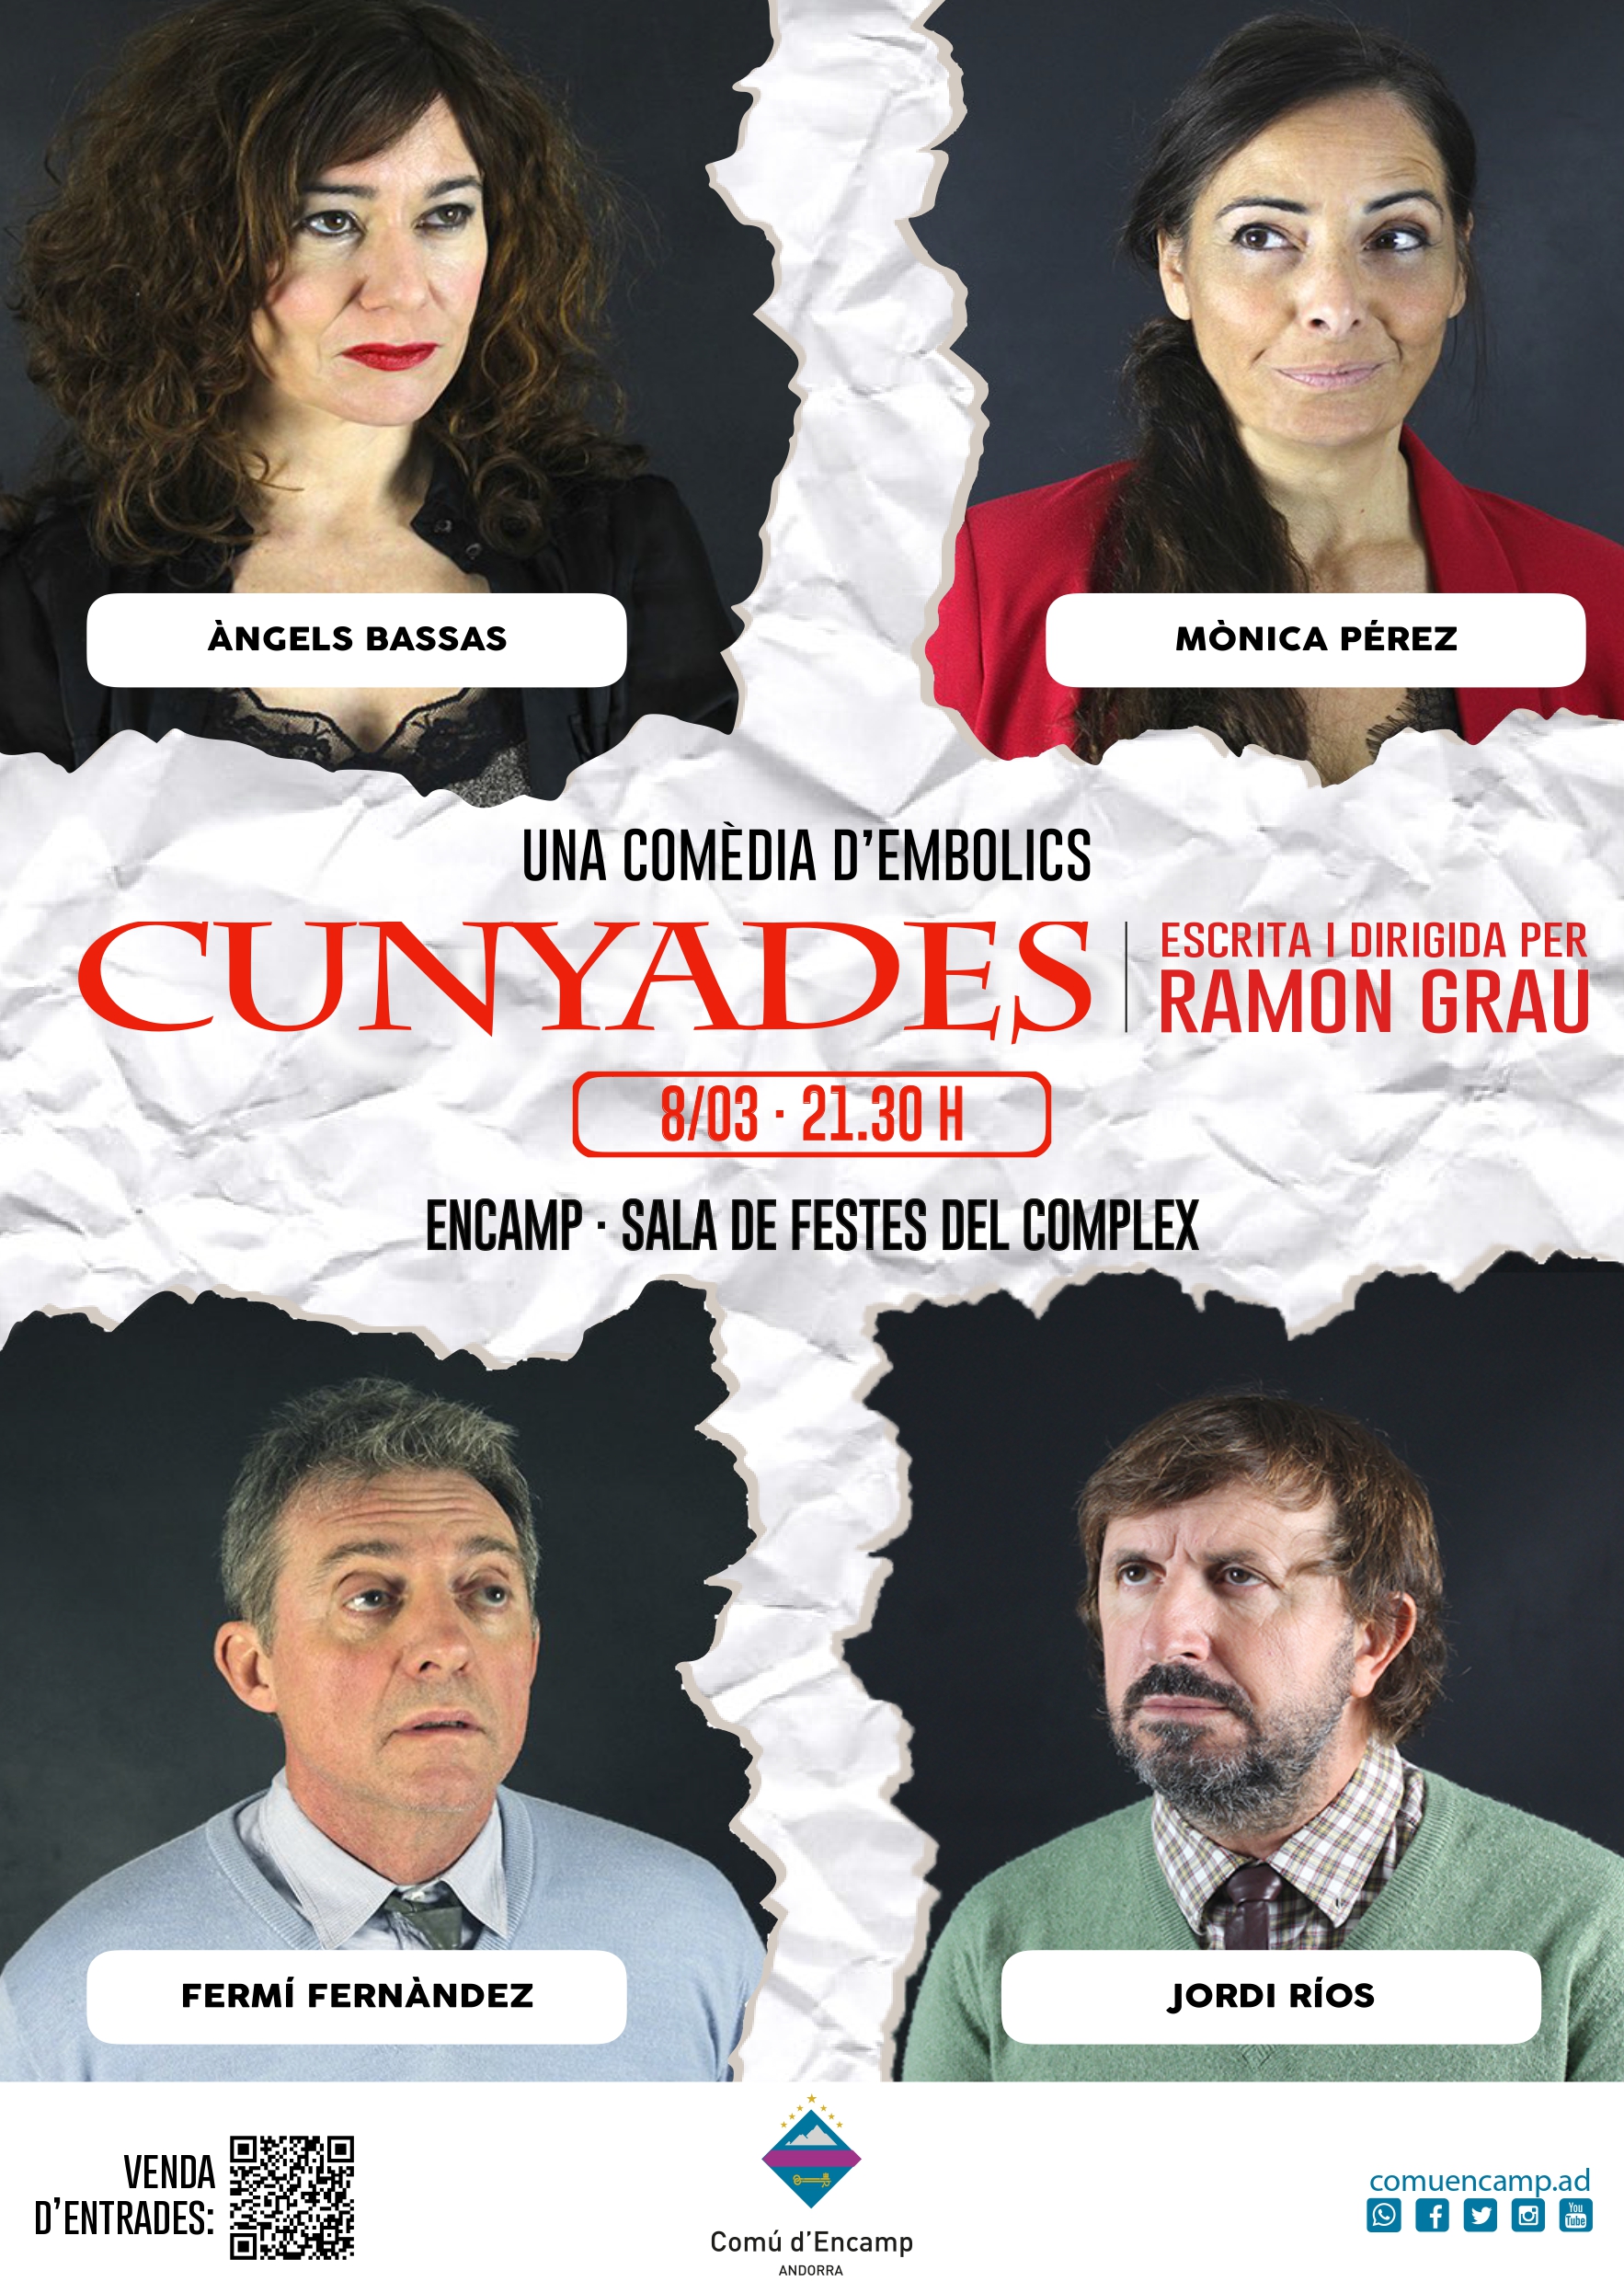 Aquest dilluns surten a la venda les entrades de l'obra "Cunyades"